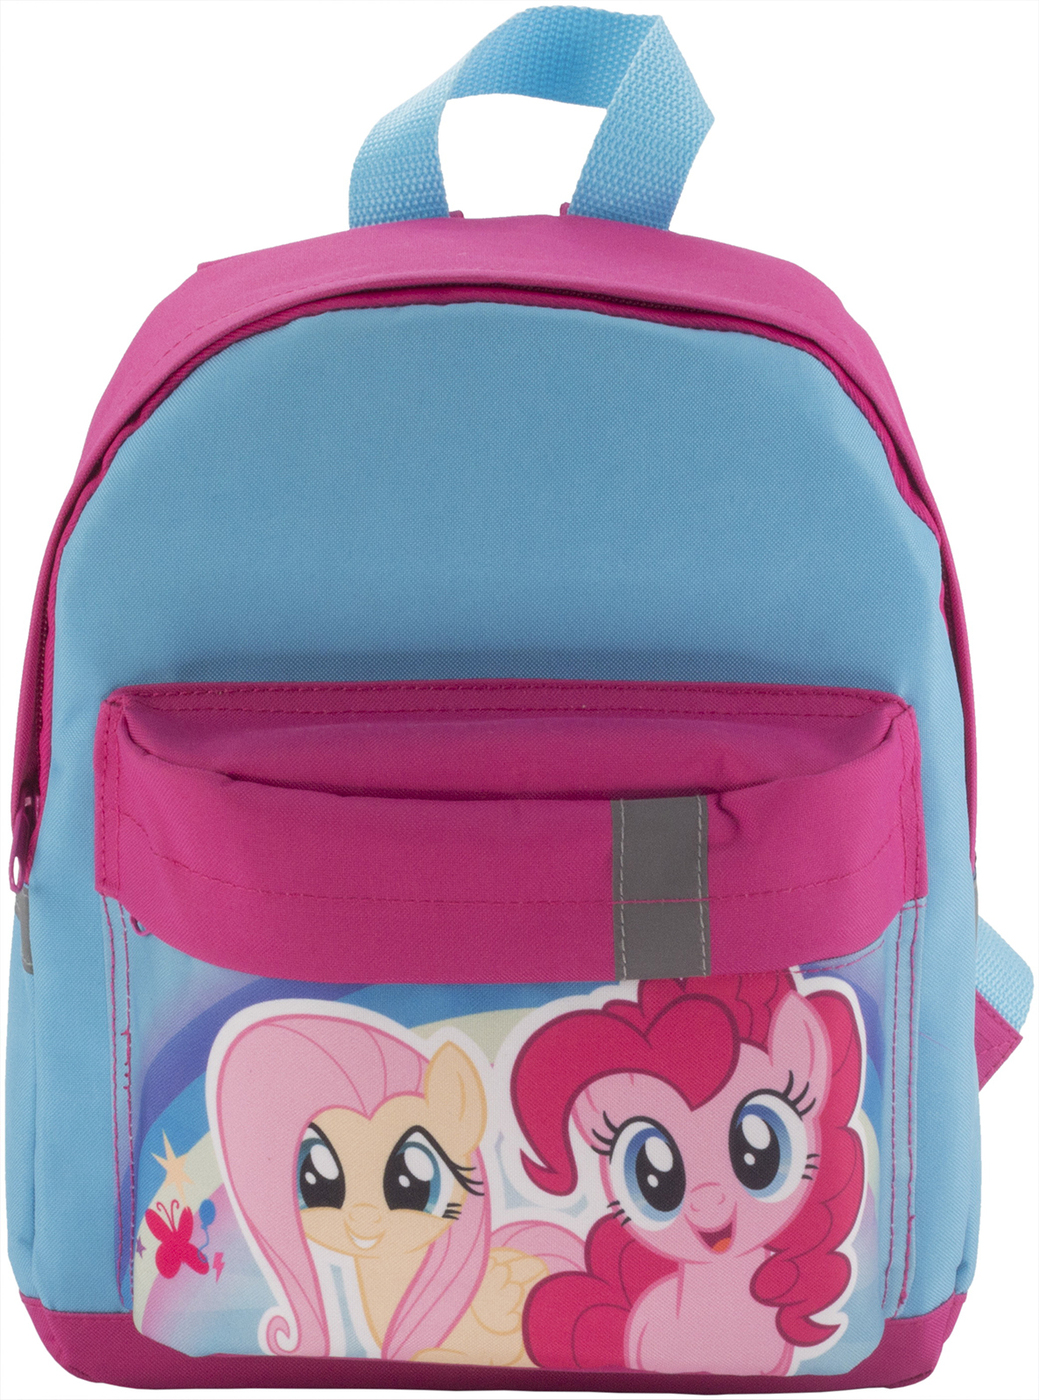 Рюкзаки для школы с пони